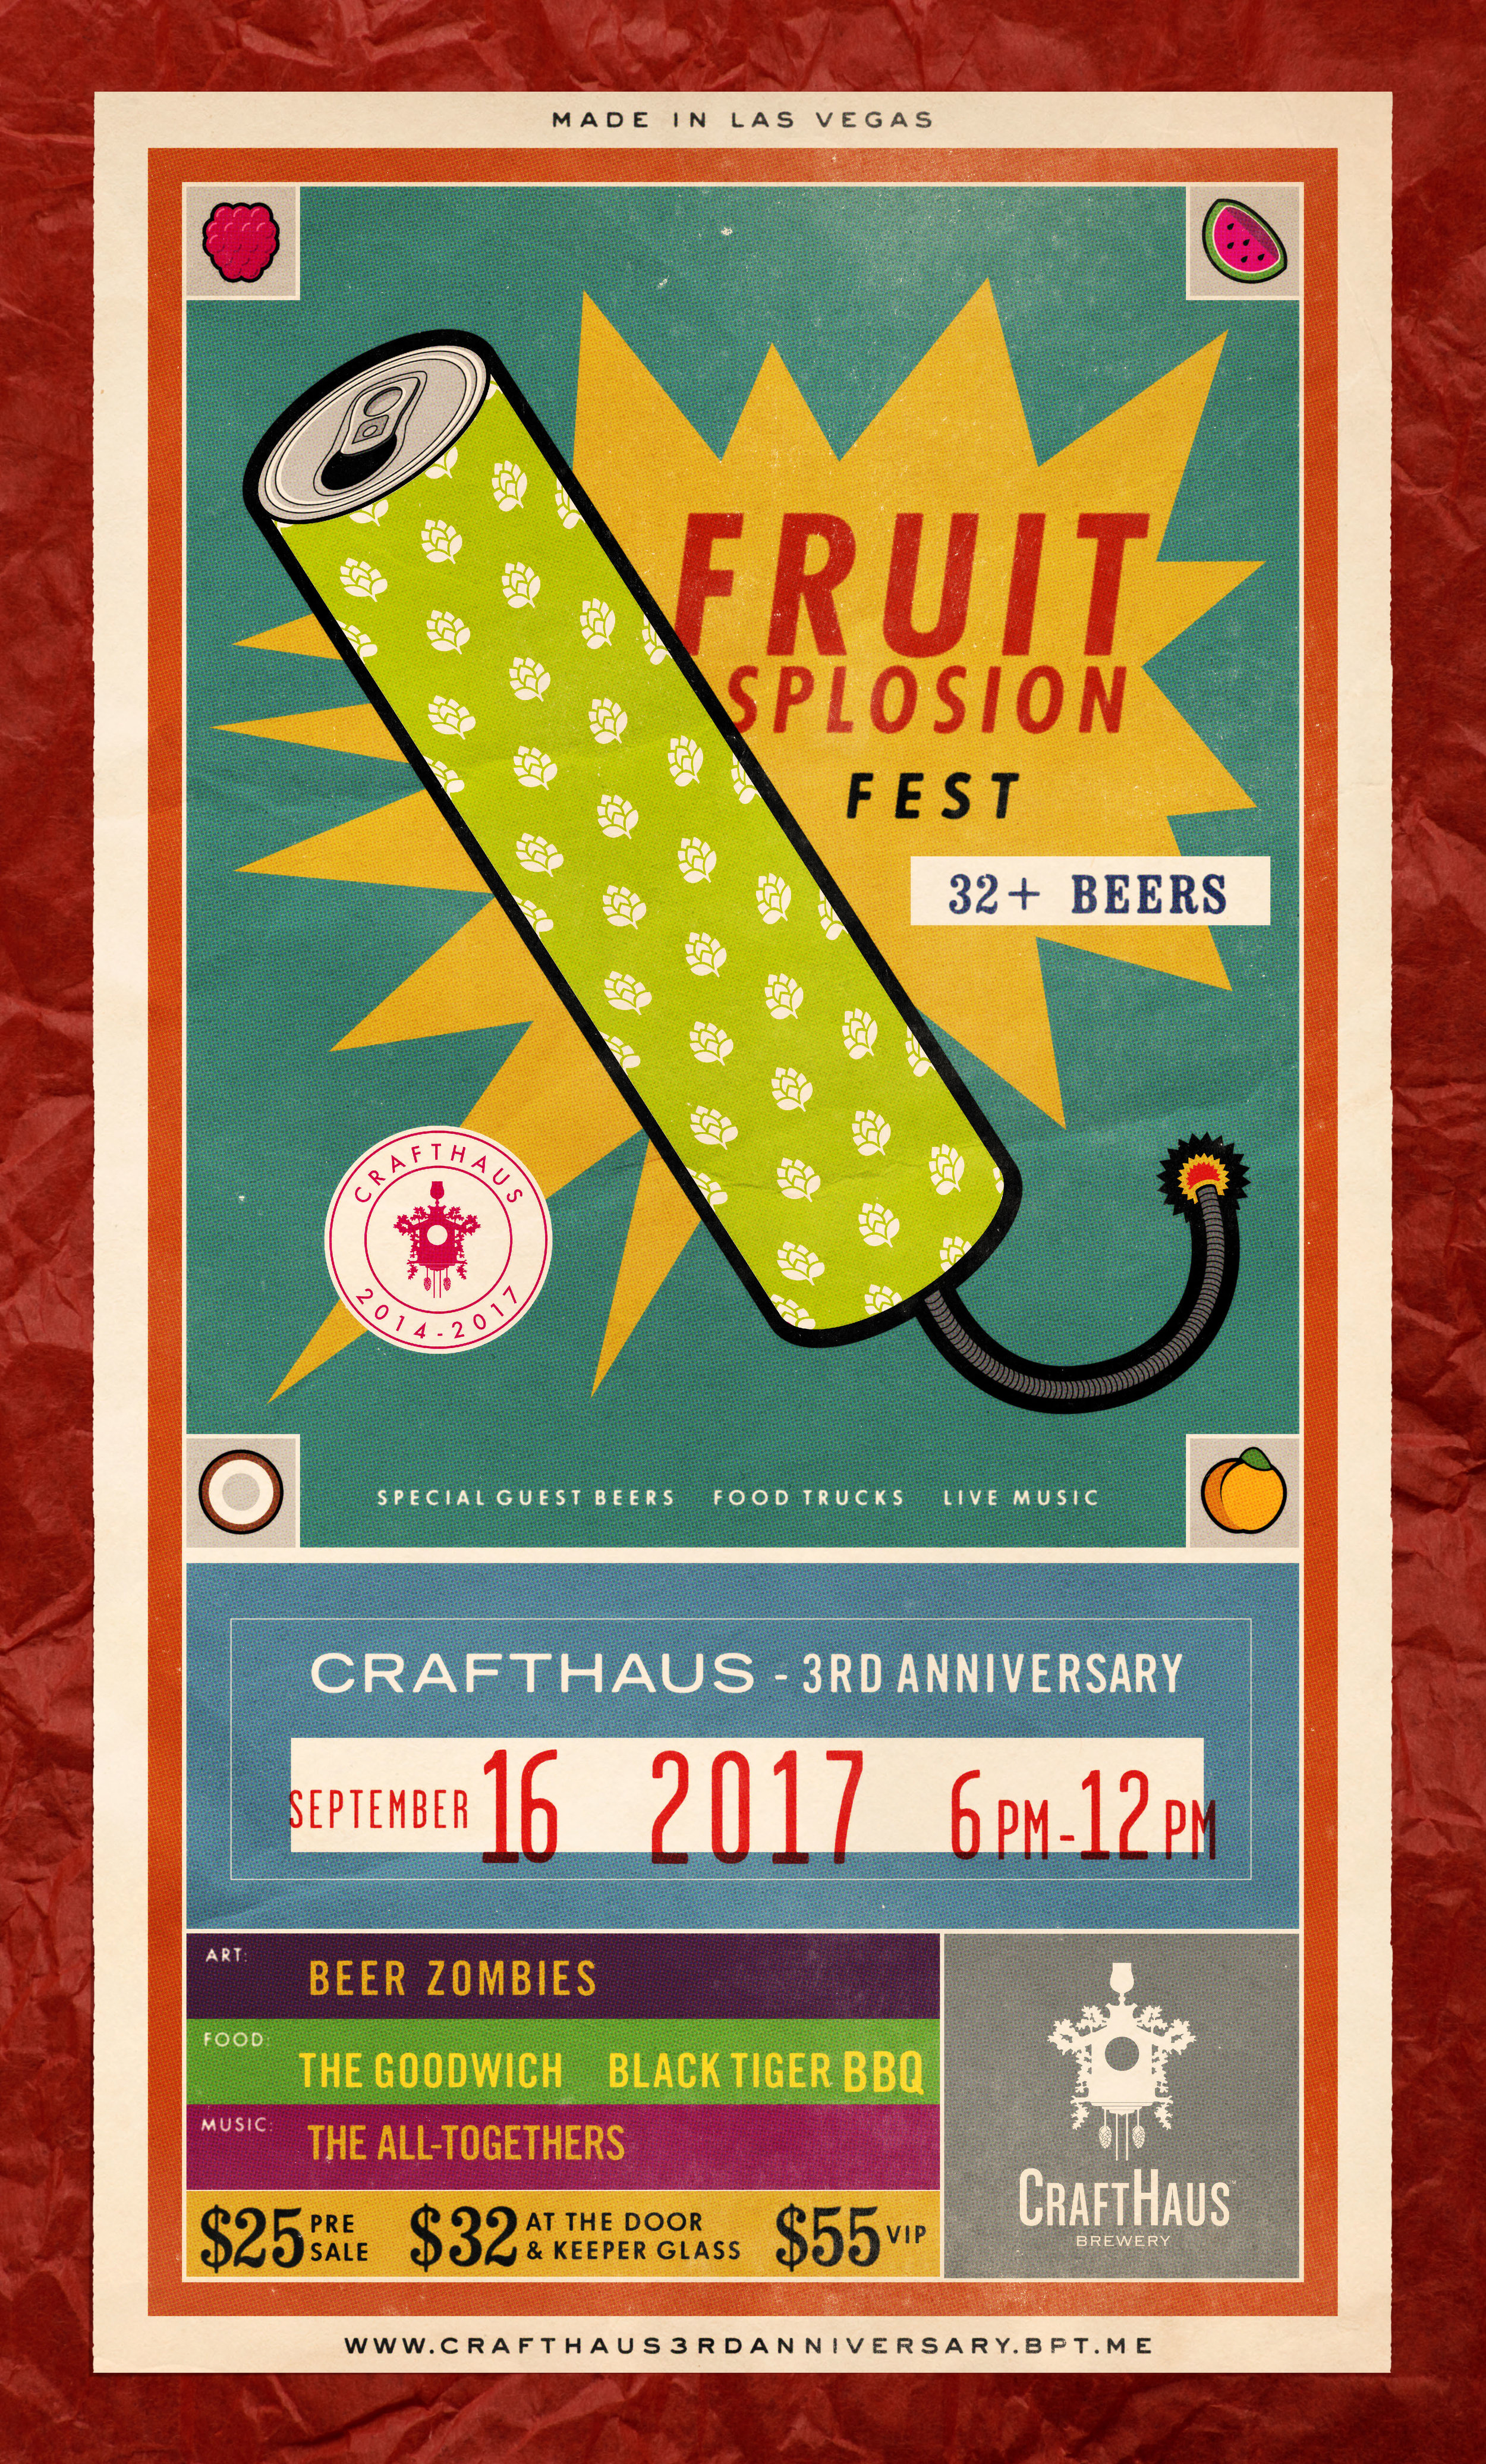 Crafthaus_FruitsplosionFest_073117_200ppi.jpg